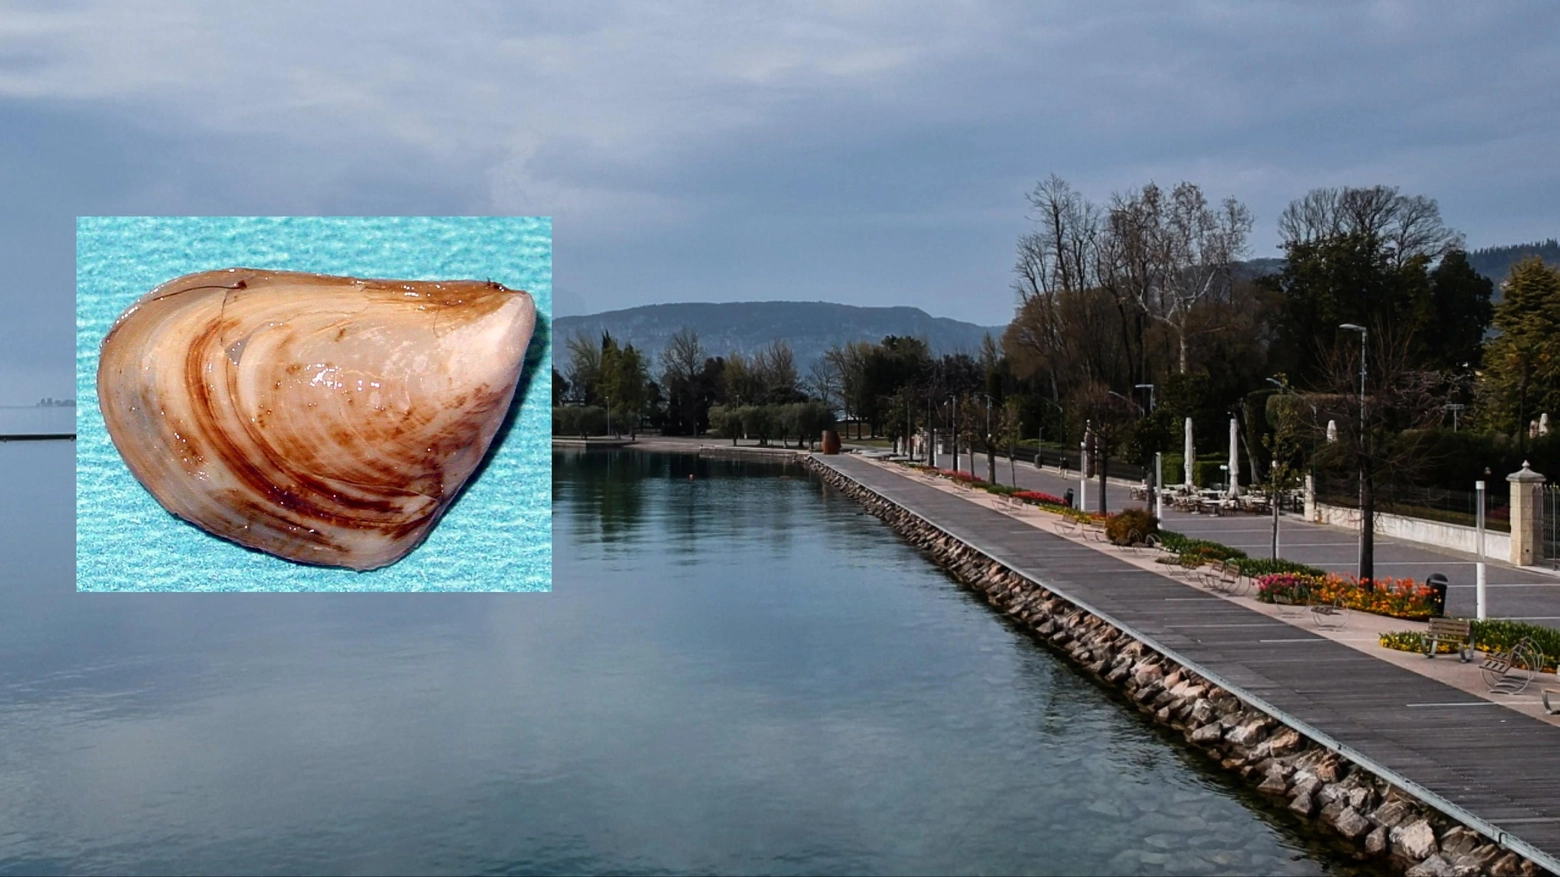  Dreissena bugensis, comunemente detta 'quagga mussel' scoperta nel lago di Garda